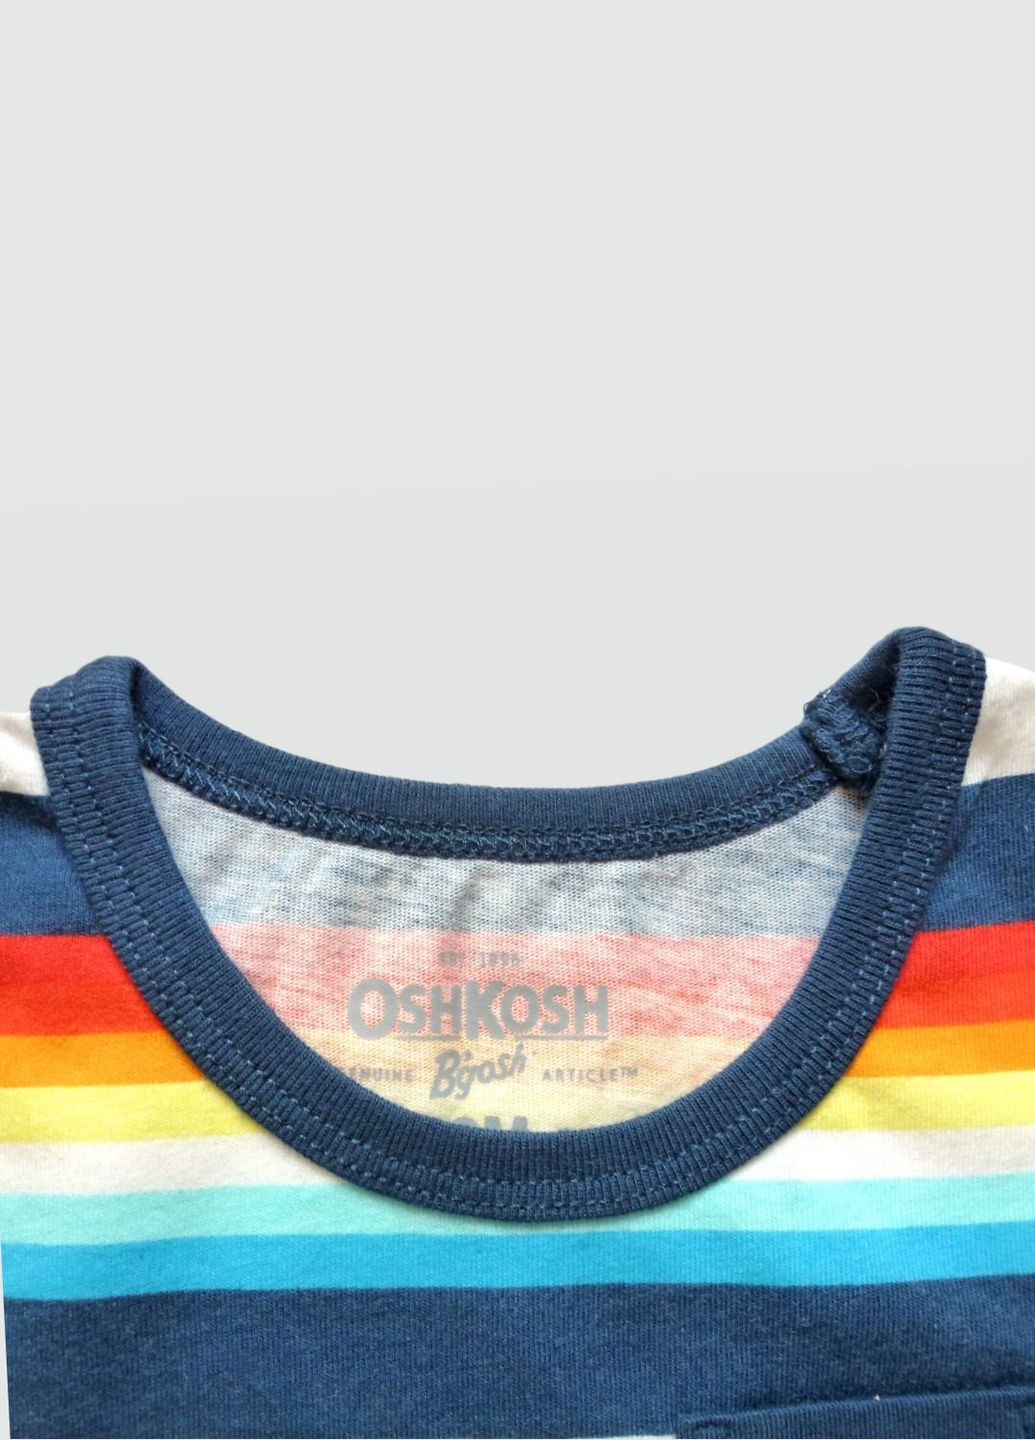 Детская майка ОhКоsh для мальчика, летняя в цветную полоску, 80-86 см OshKosh (291882310)